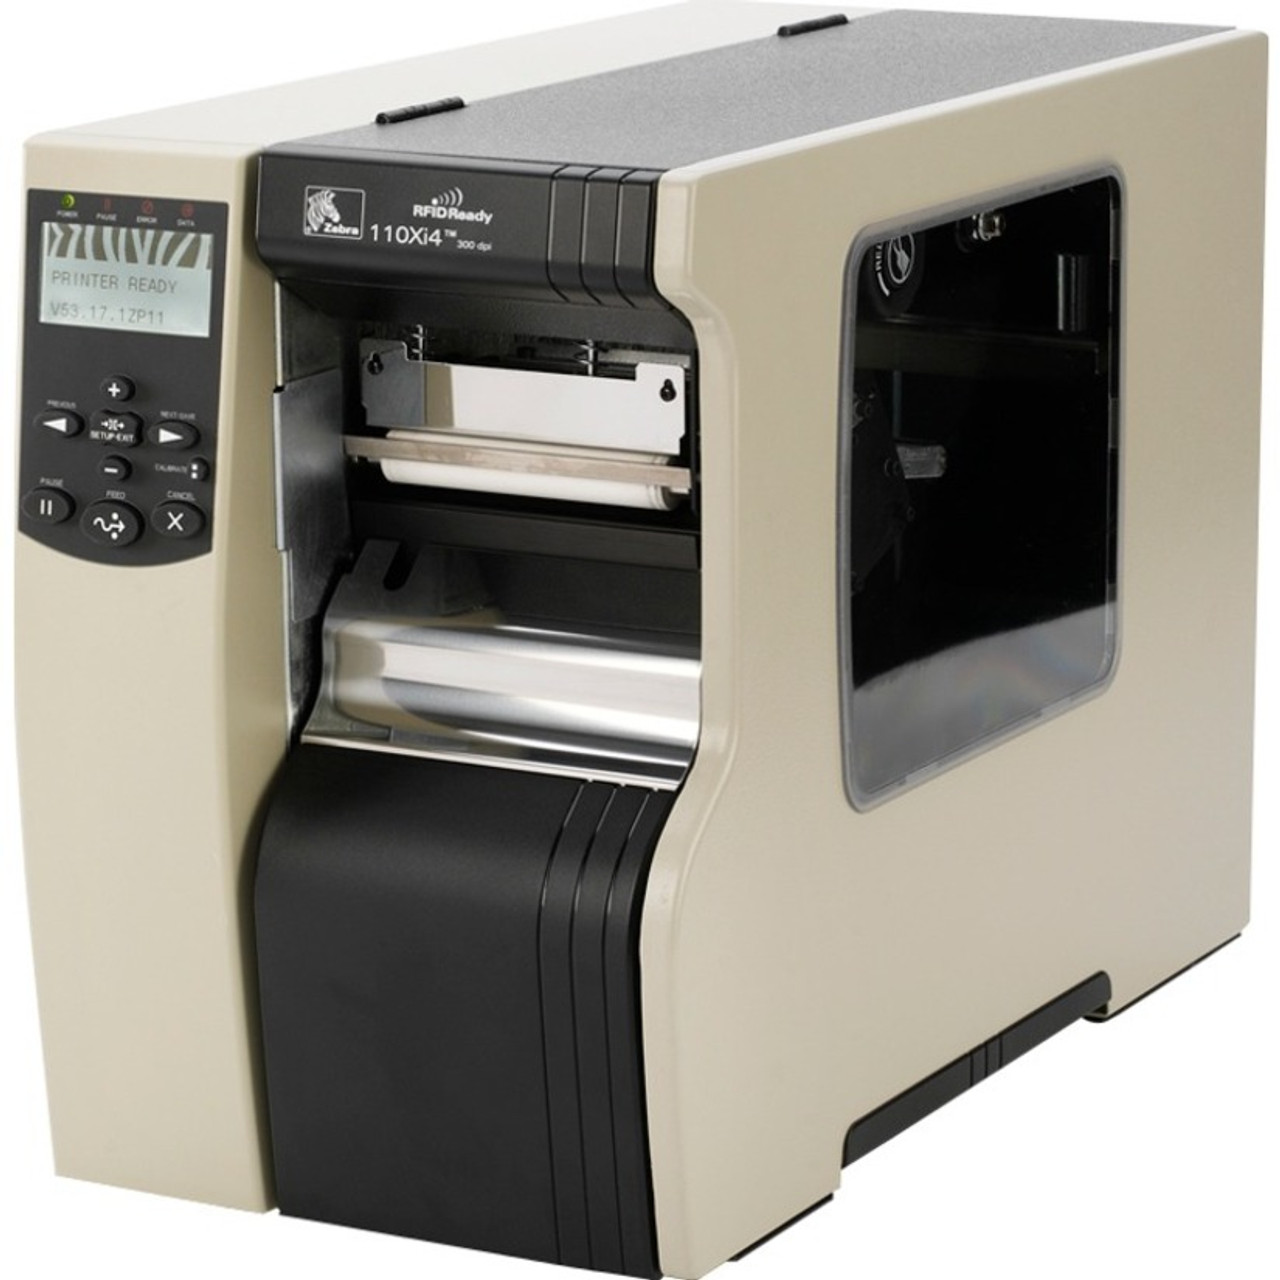 Zebra 110Xi4 Desktop Direct Thermal/Thermal Transfer Printer - Monochrome - Label Print - USB - Serial - Parallel - 112-805-00100